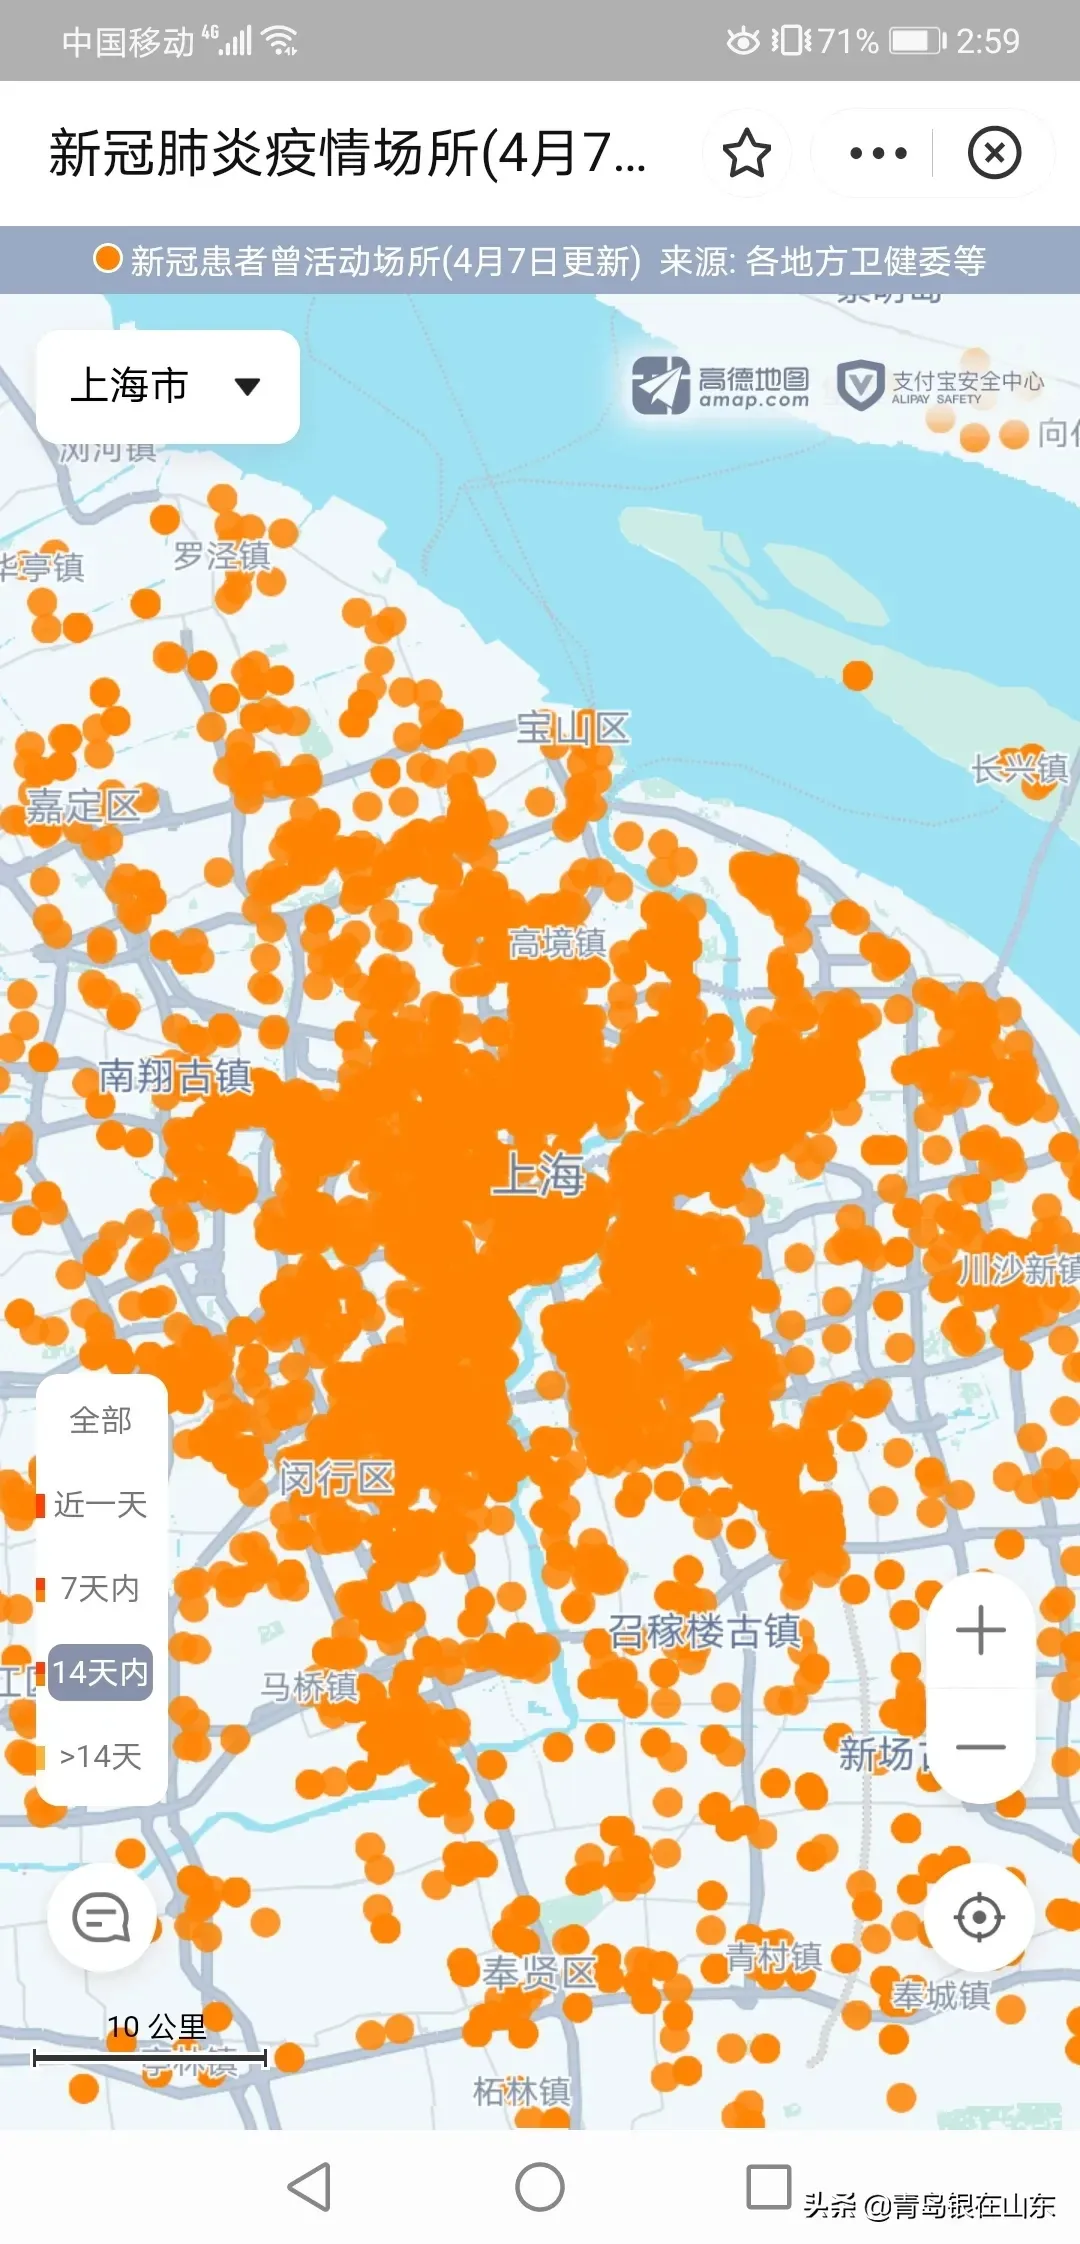 上海疫情地图 上海风险地区最新划分 上海新冠分布图 实时